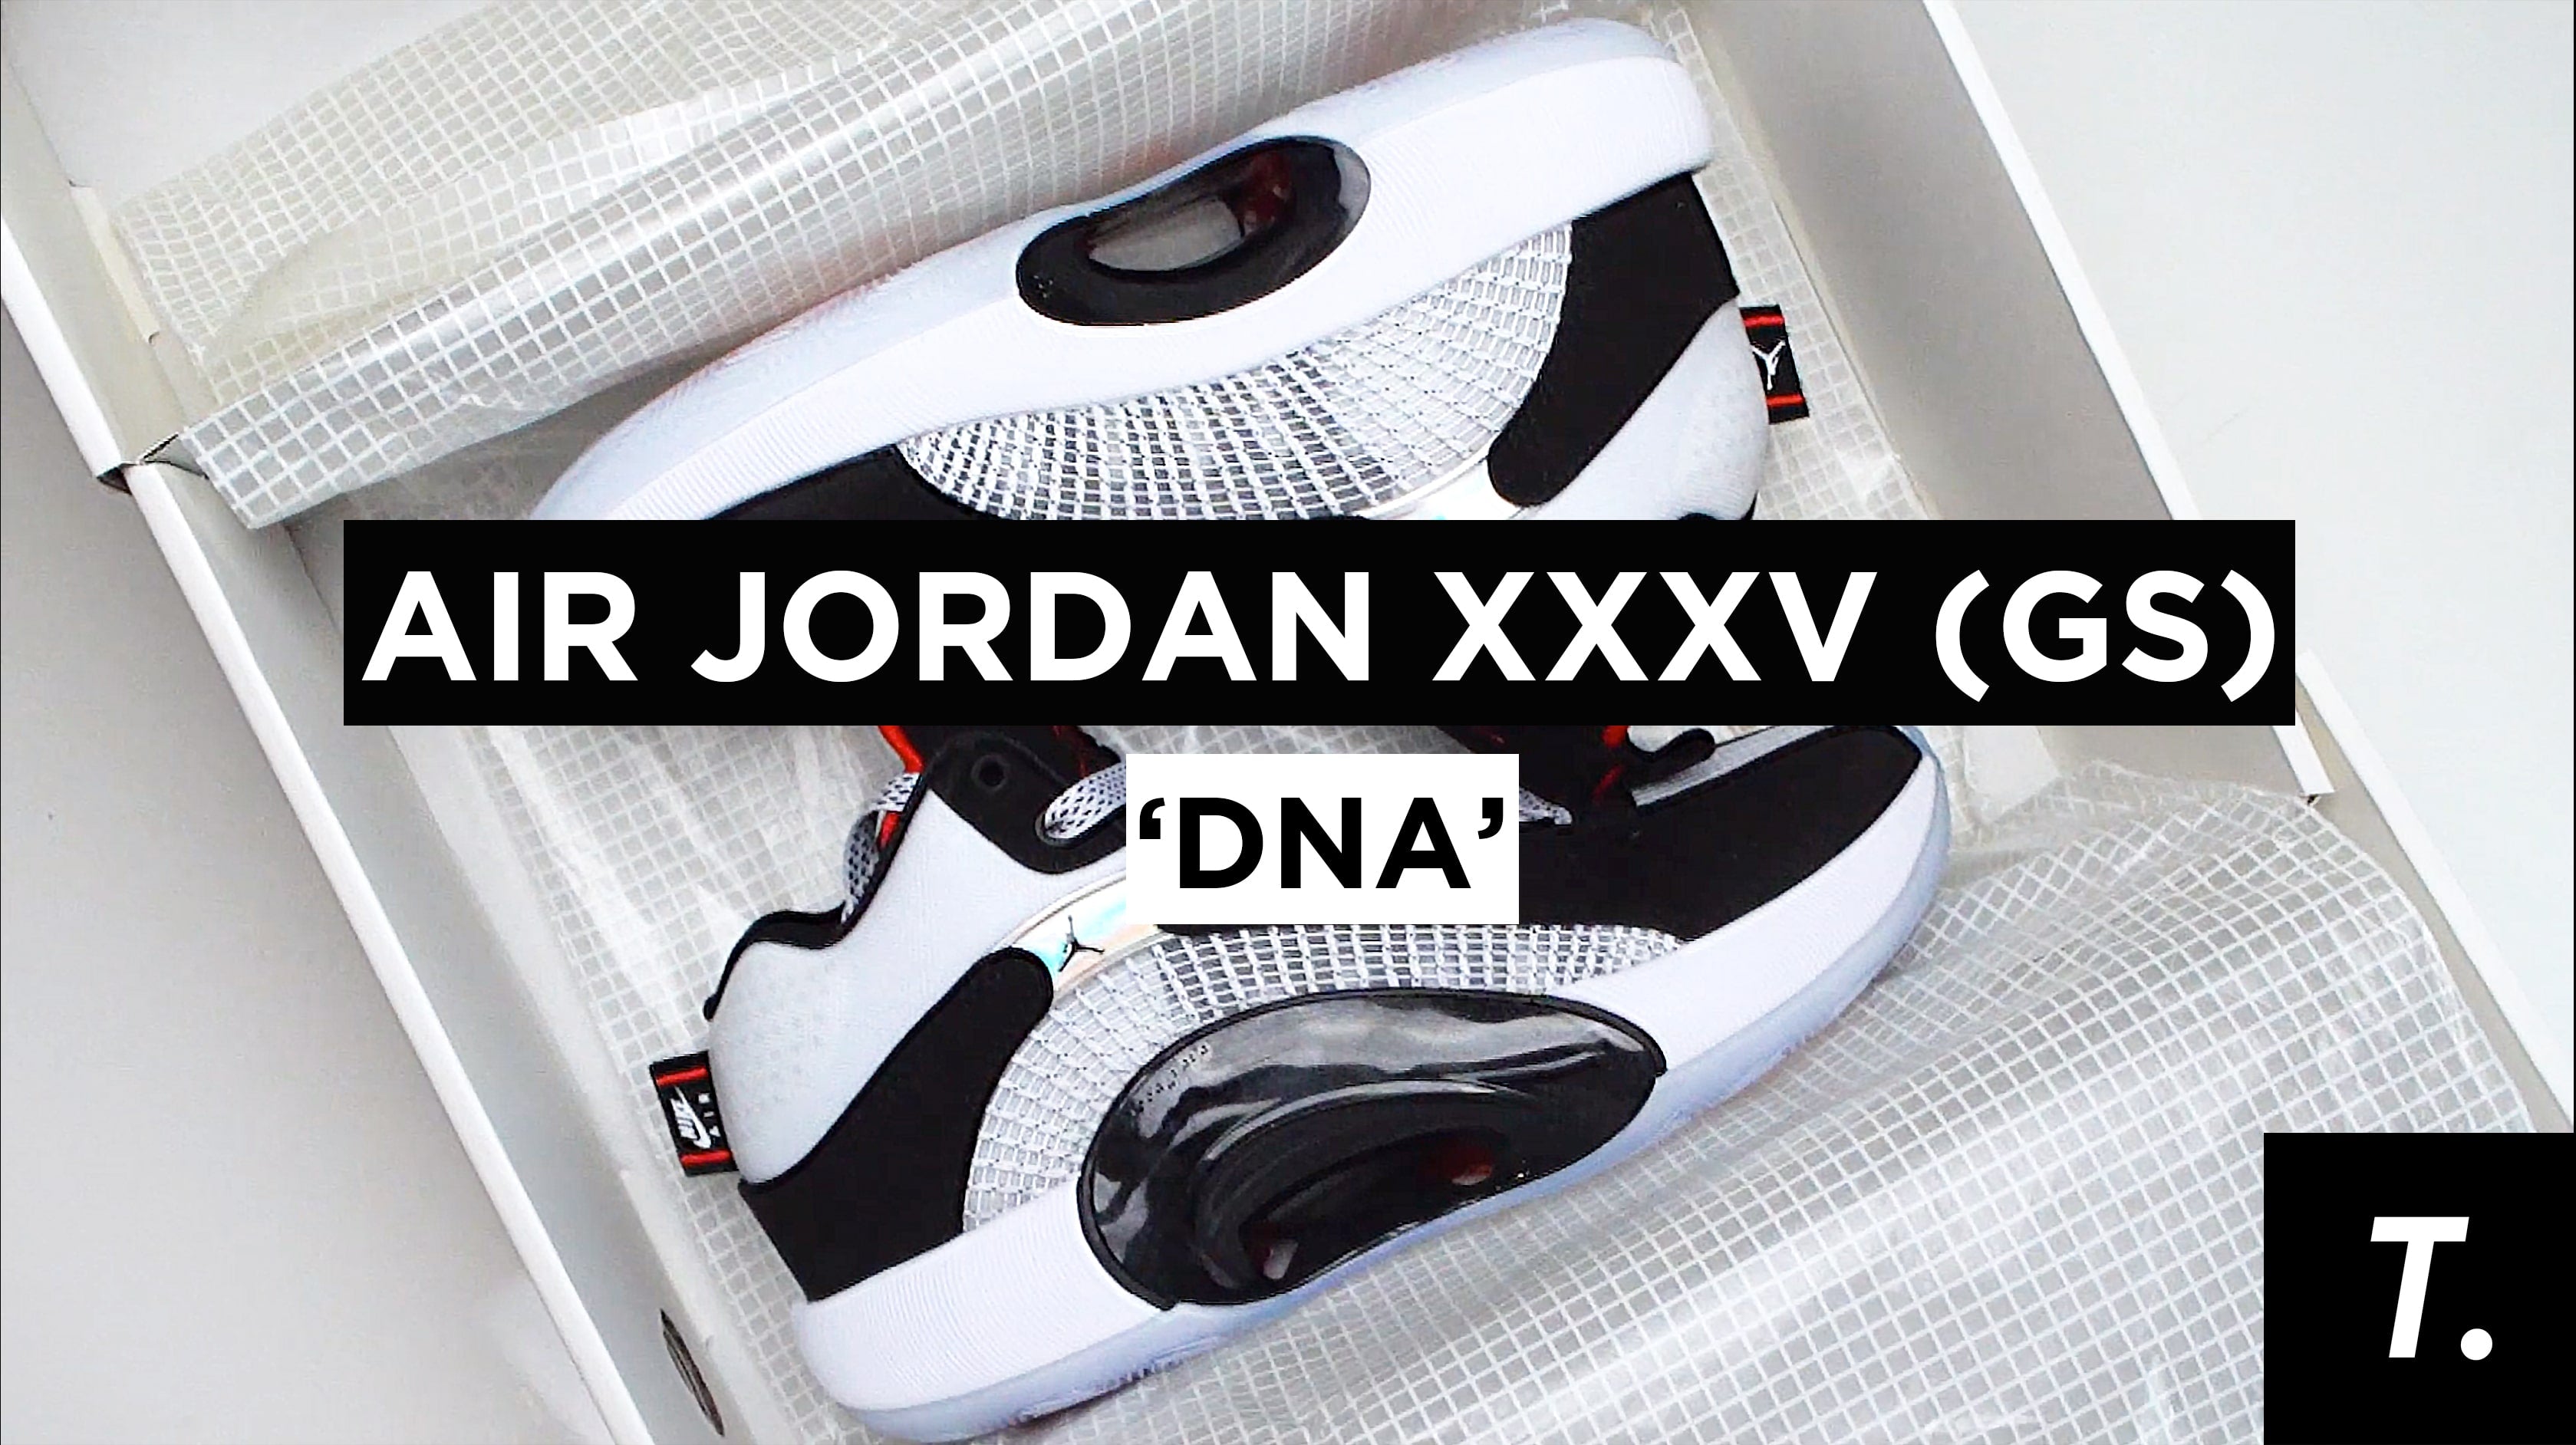 Air Jordan XXXV (GS) - 'DNA'